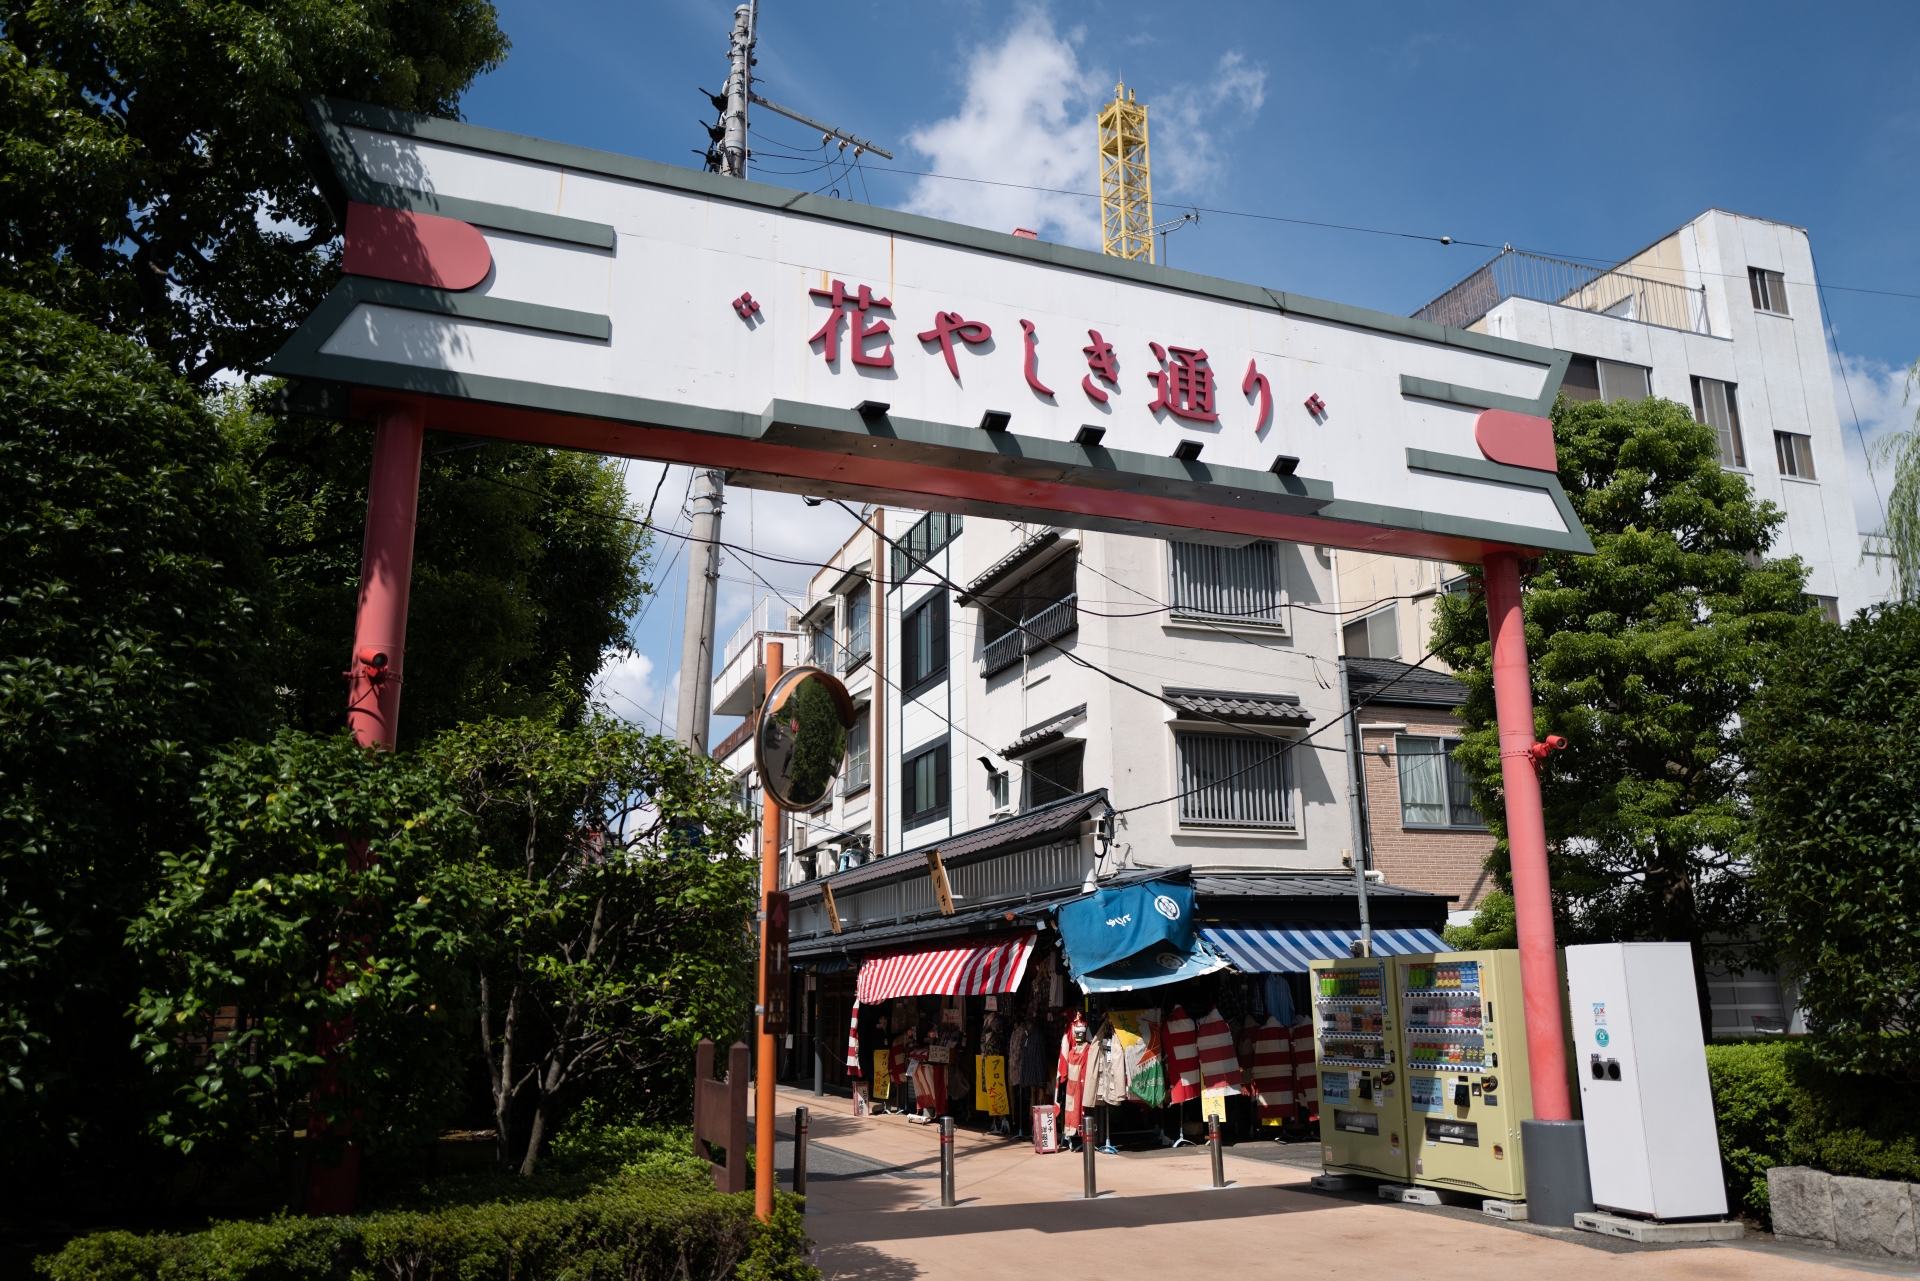 Hanayashiki: An Amusement Park in Asakusa